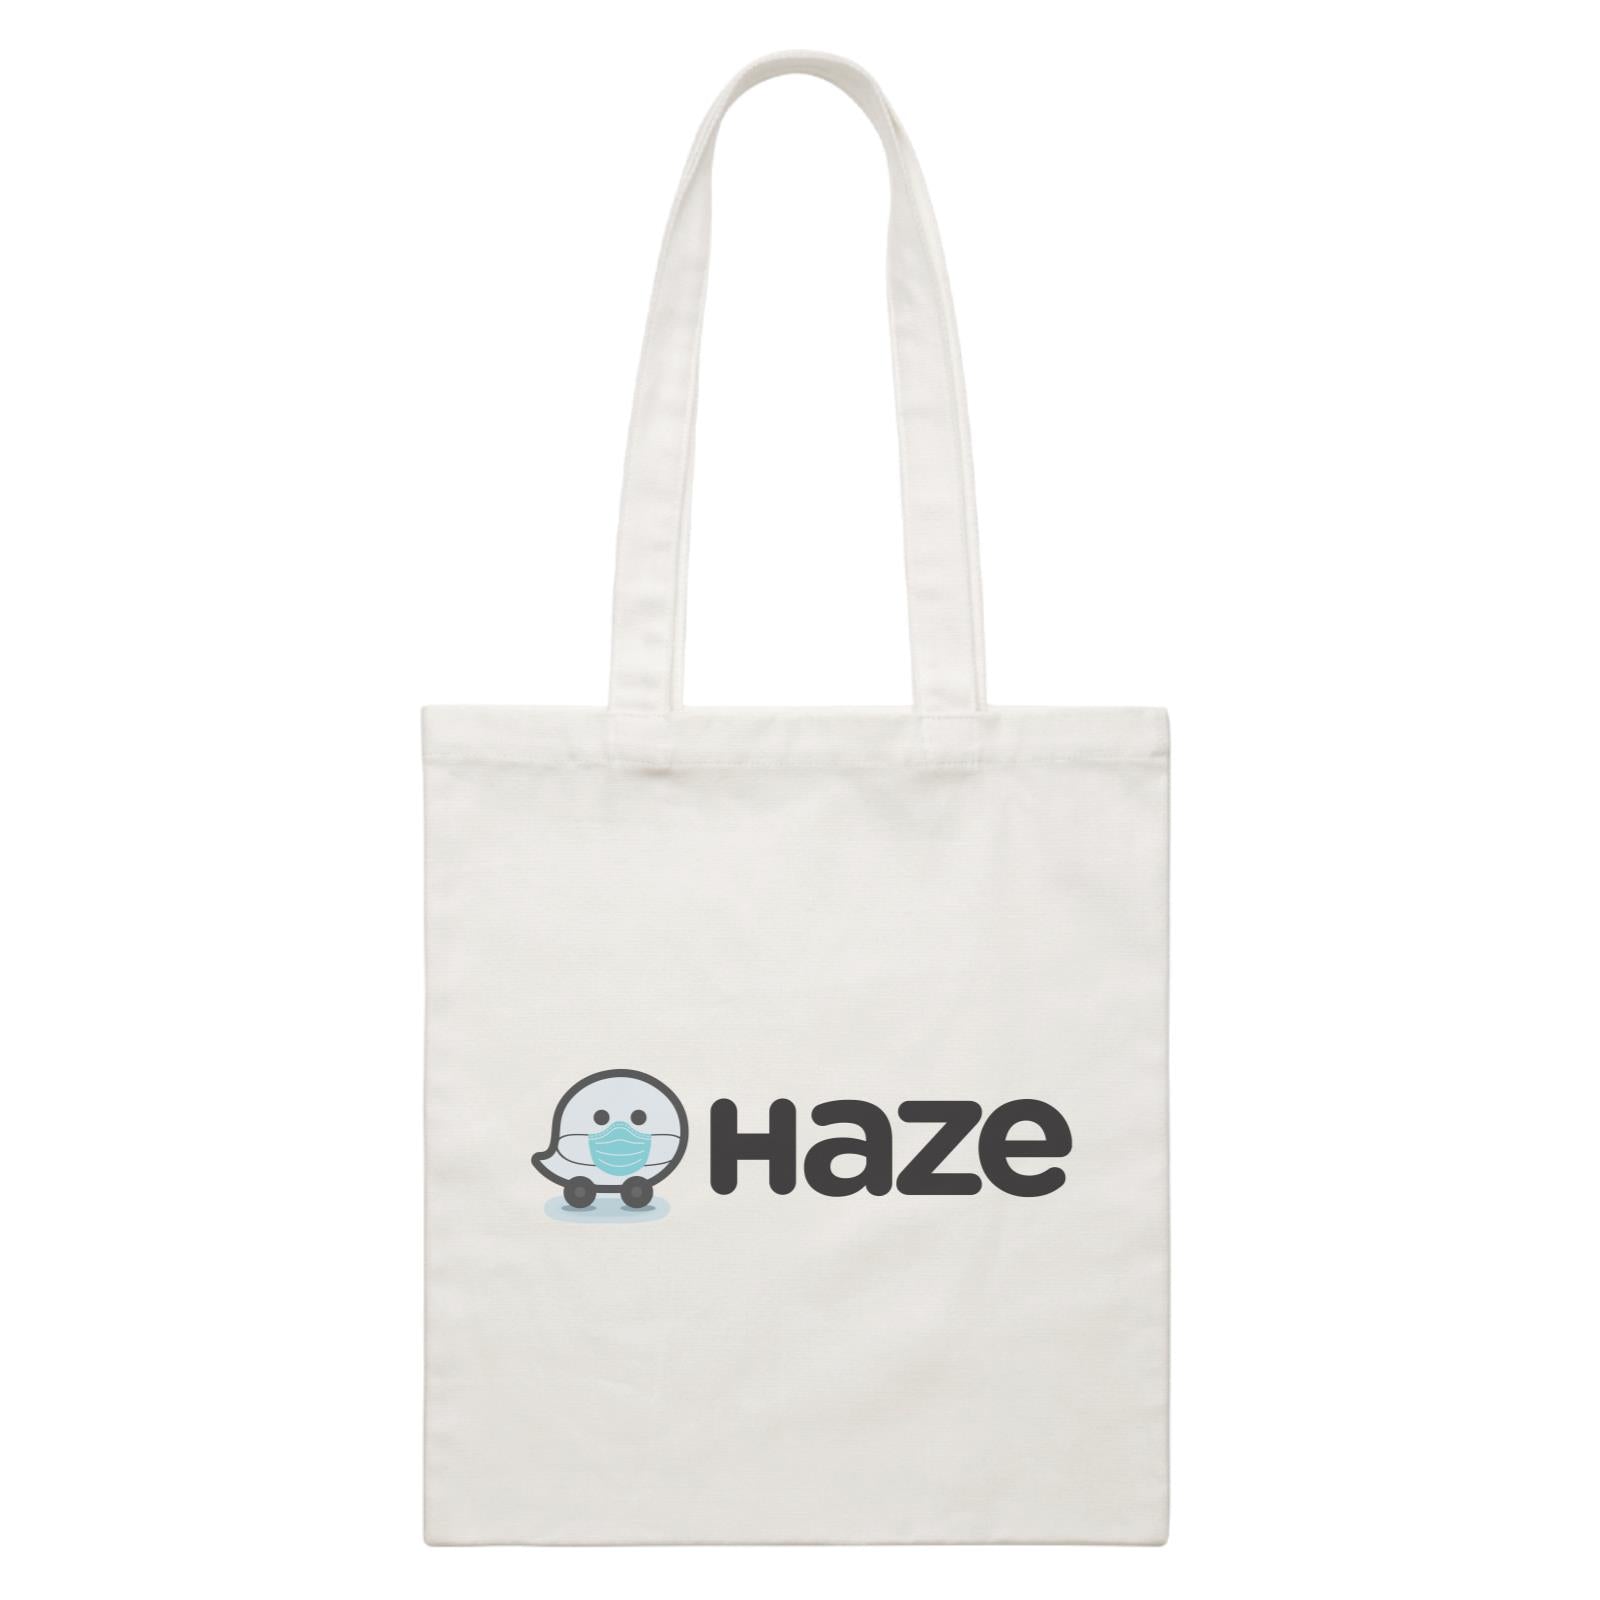 Slang Statement Haze Accessories White Canvas Bag